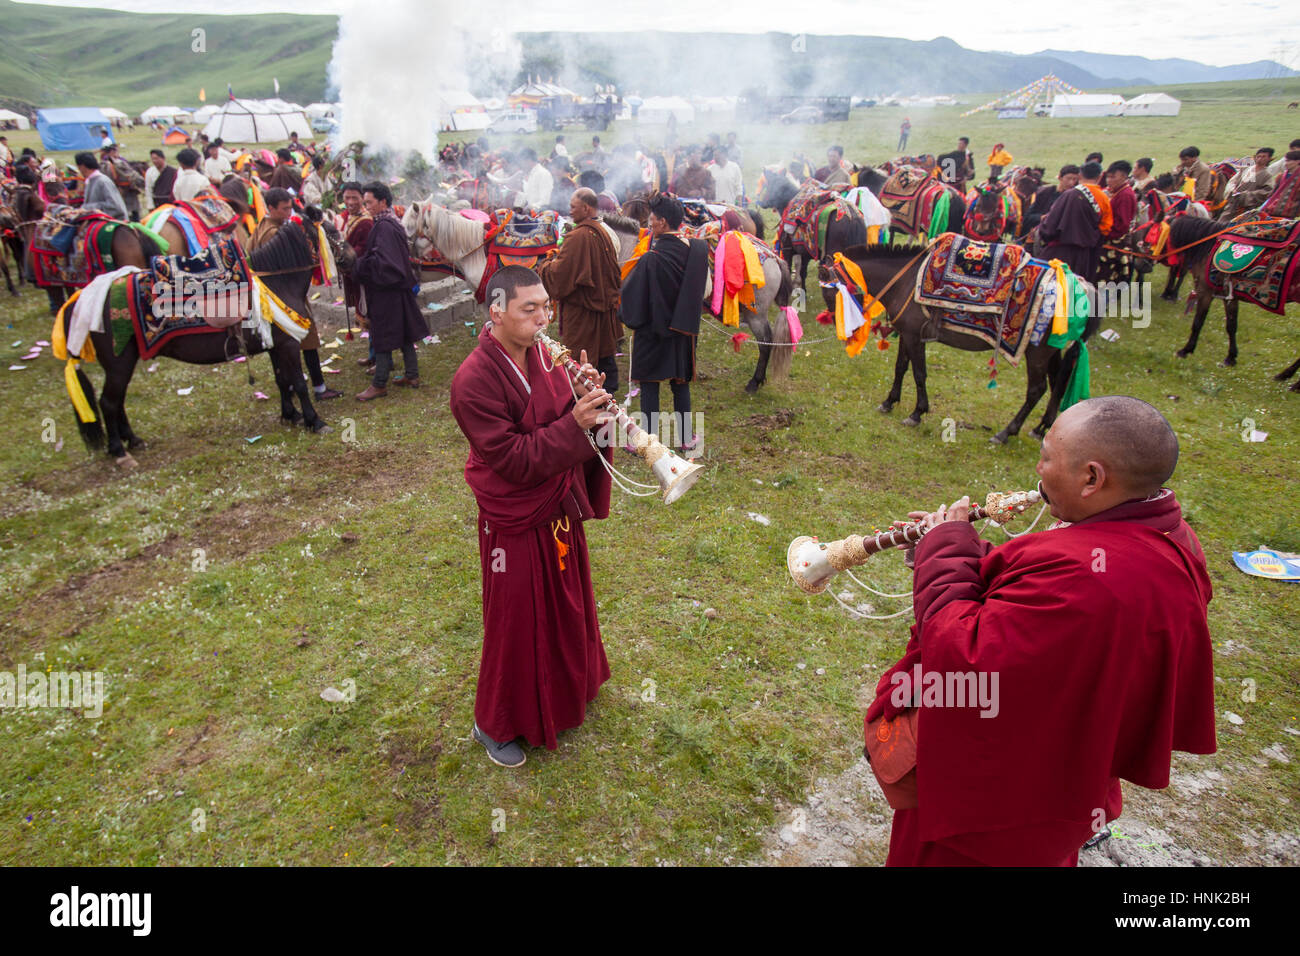 Monjes budistas tibetanos tocan los instrumentos tradicionales para bendecir a los jinetes antes de competición en el Festival de Caballos Manigango alta en la platea tibetano Foto de stock